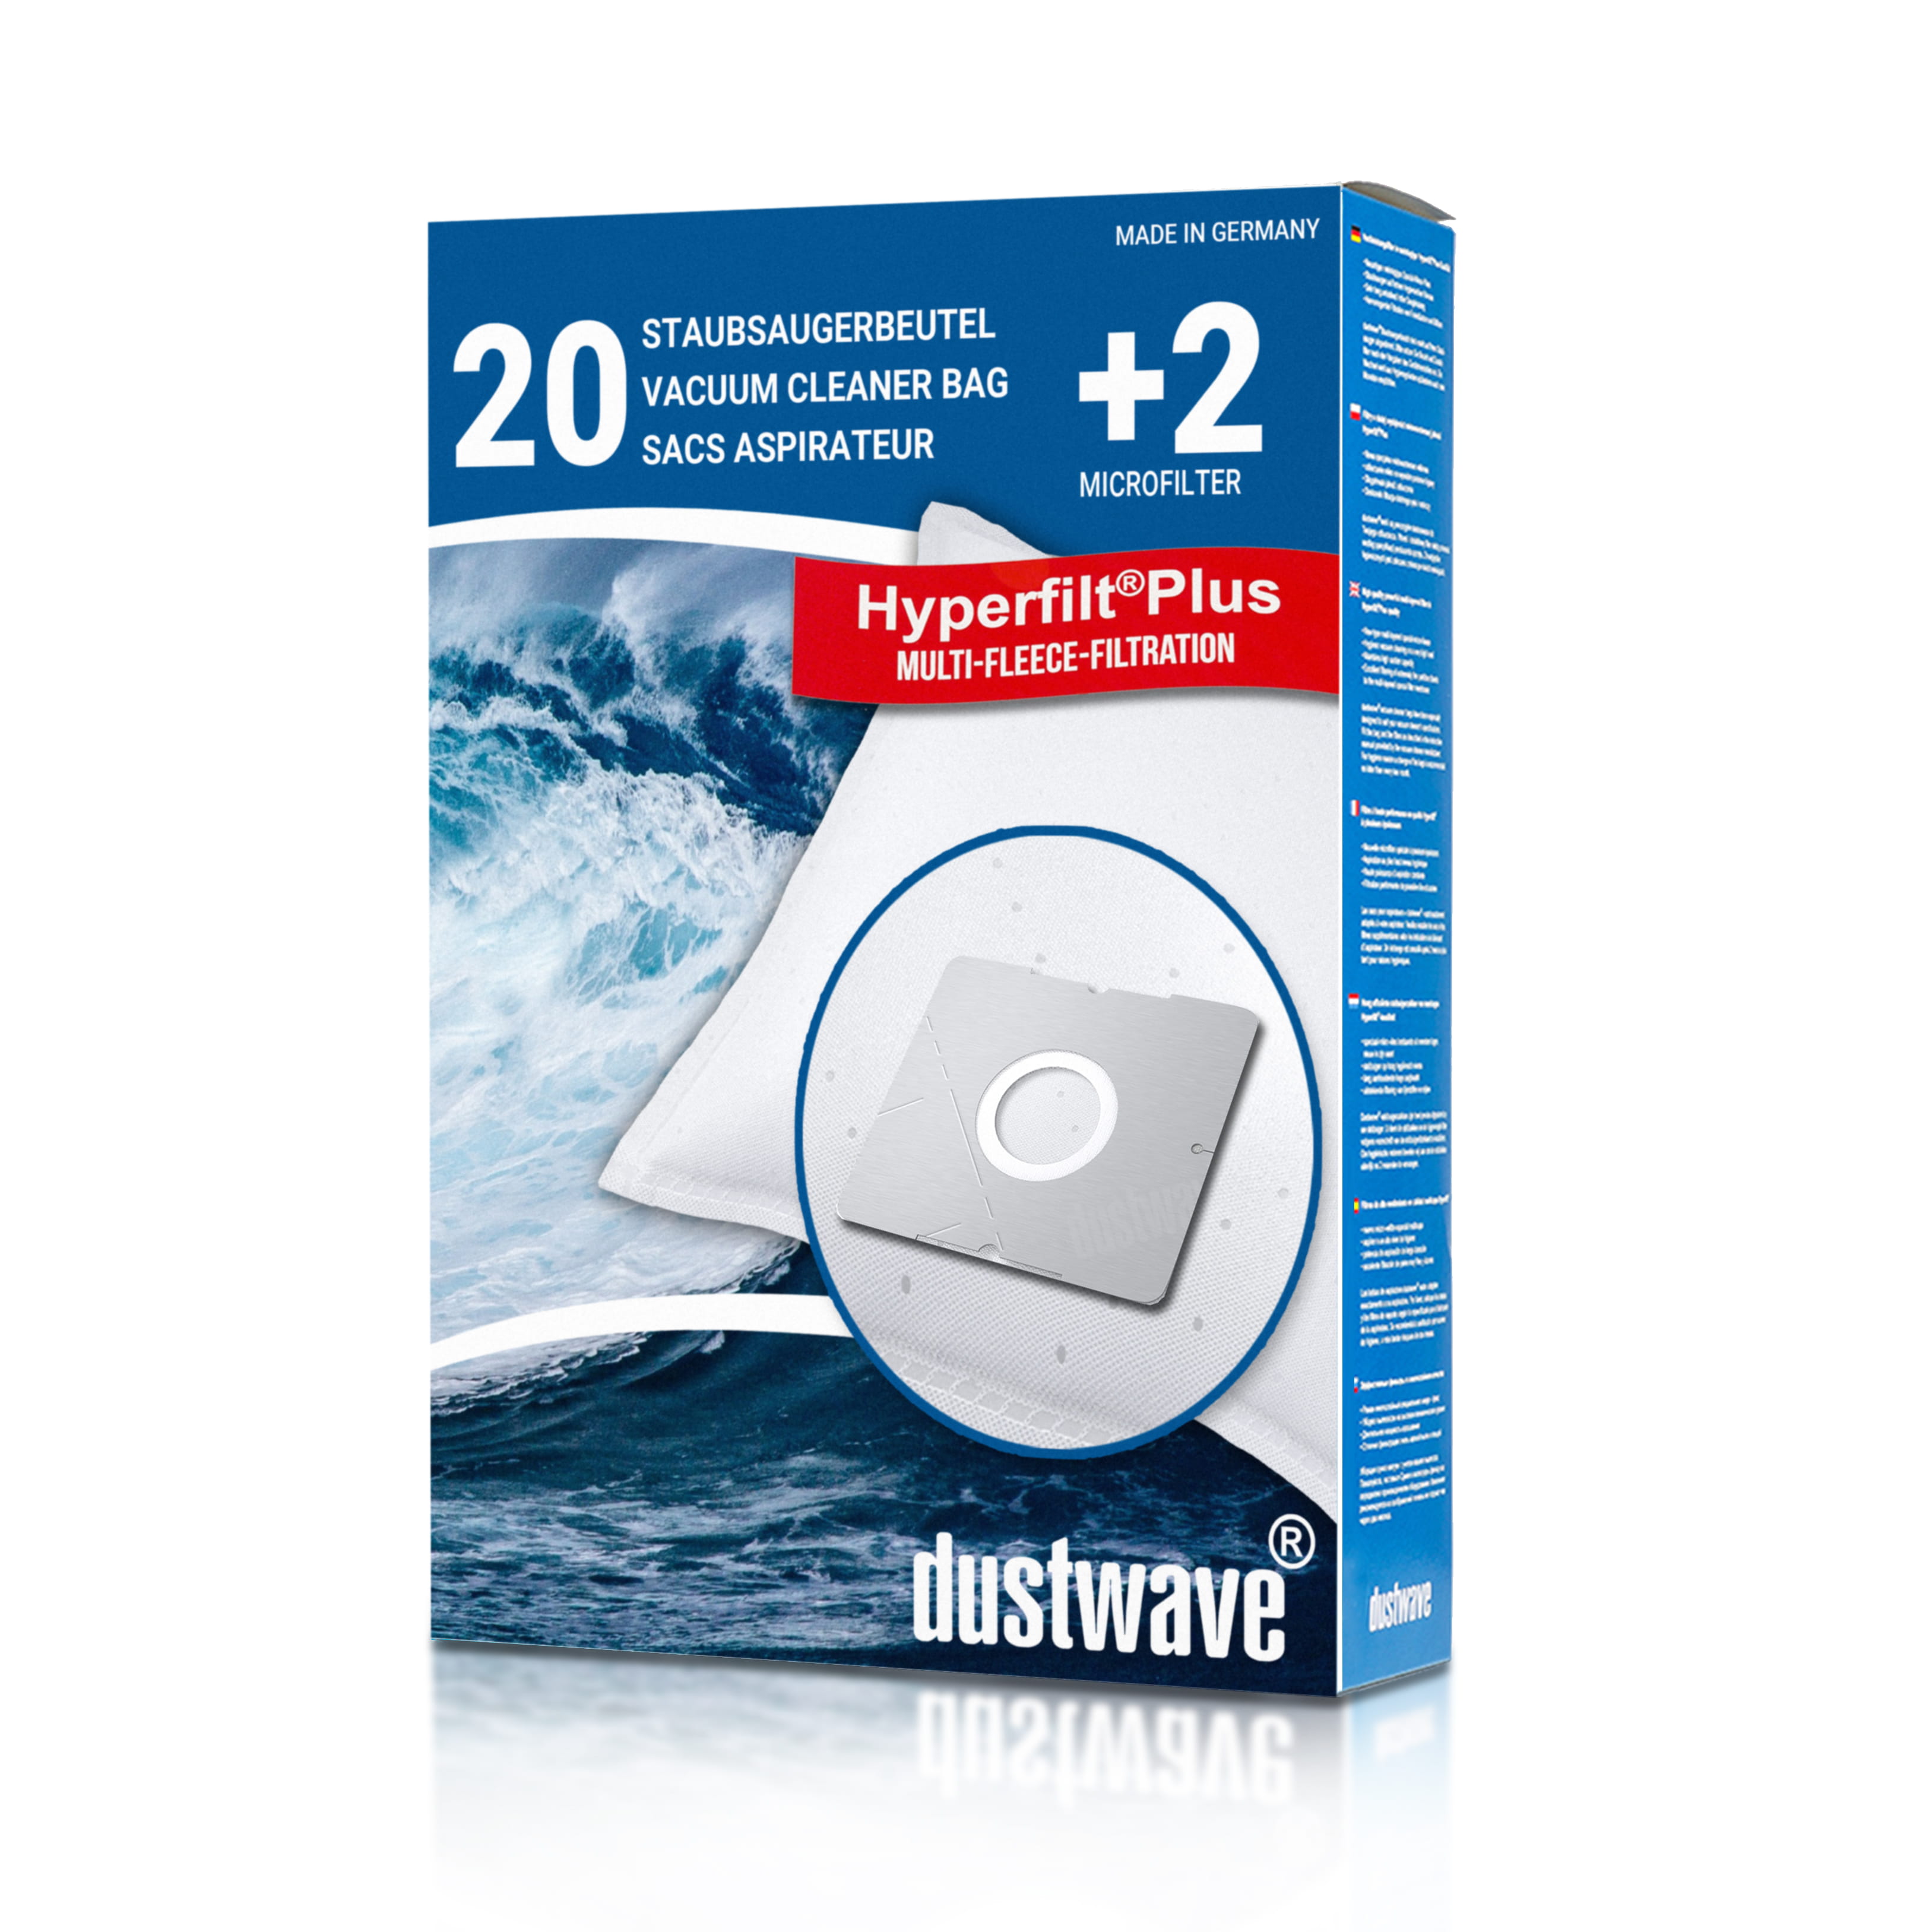 Dustwave® 20 Staubsaugerbeutel für Bliss BS 1400 - hocheffizient, mehrlagiges Mikrovlies mit Hygieneverschluss - Made in Germany